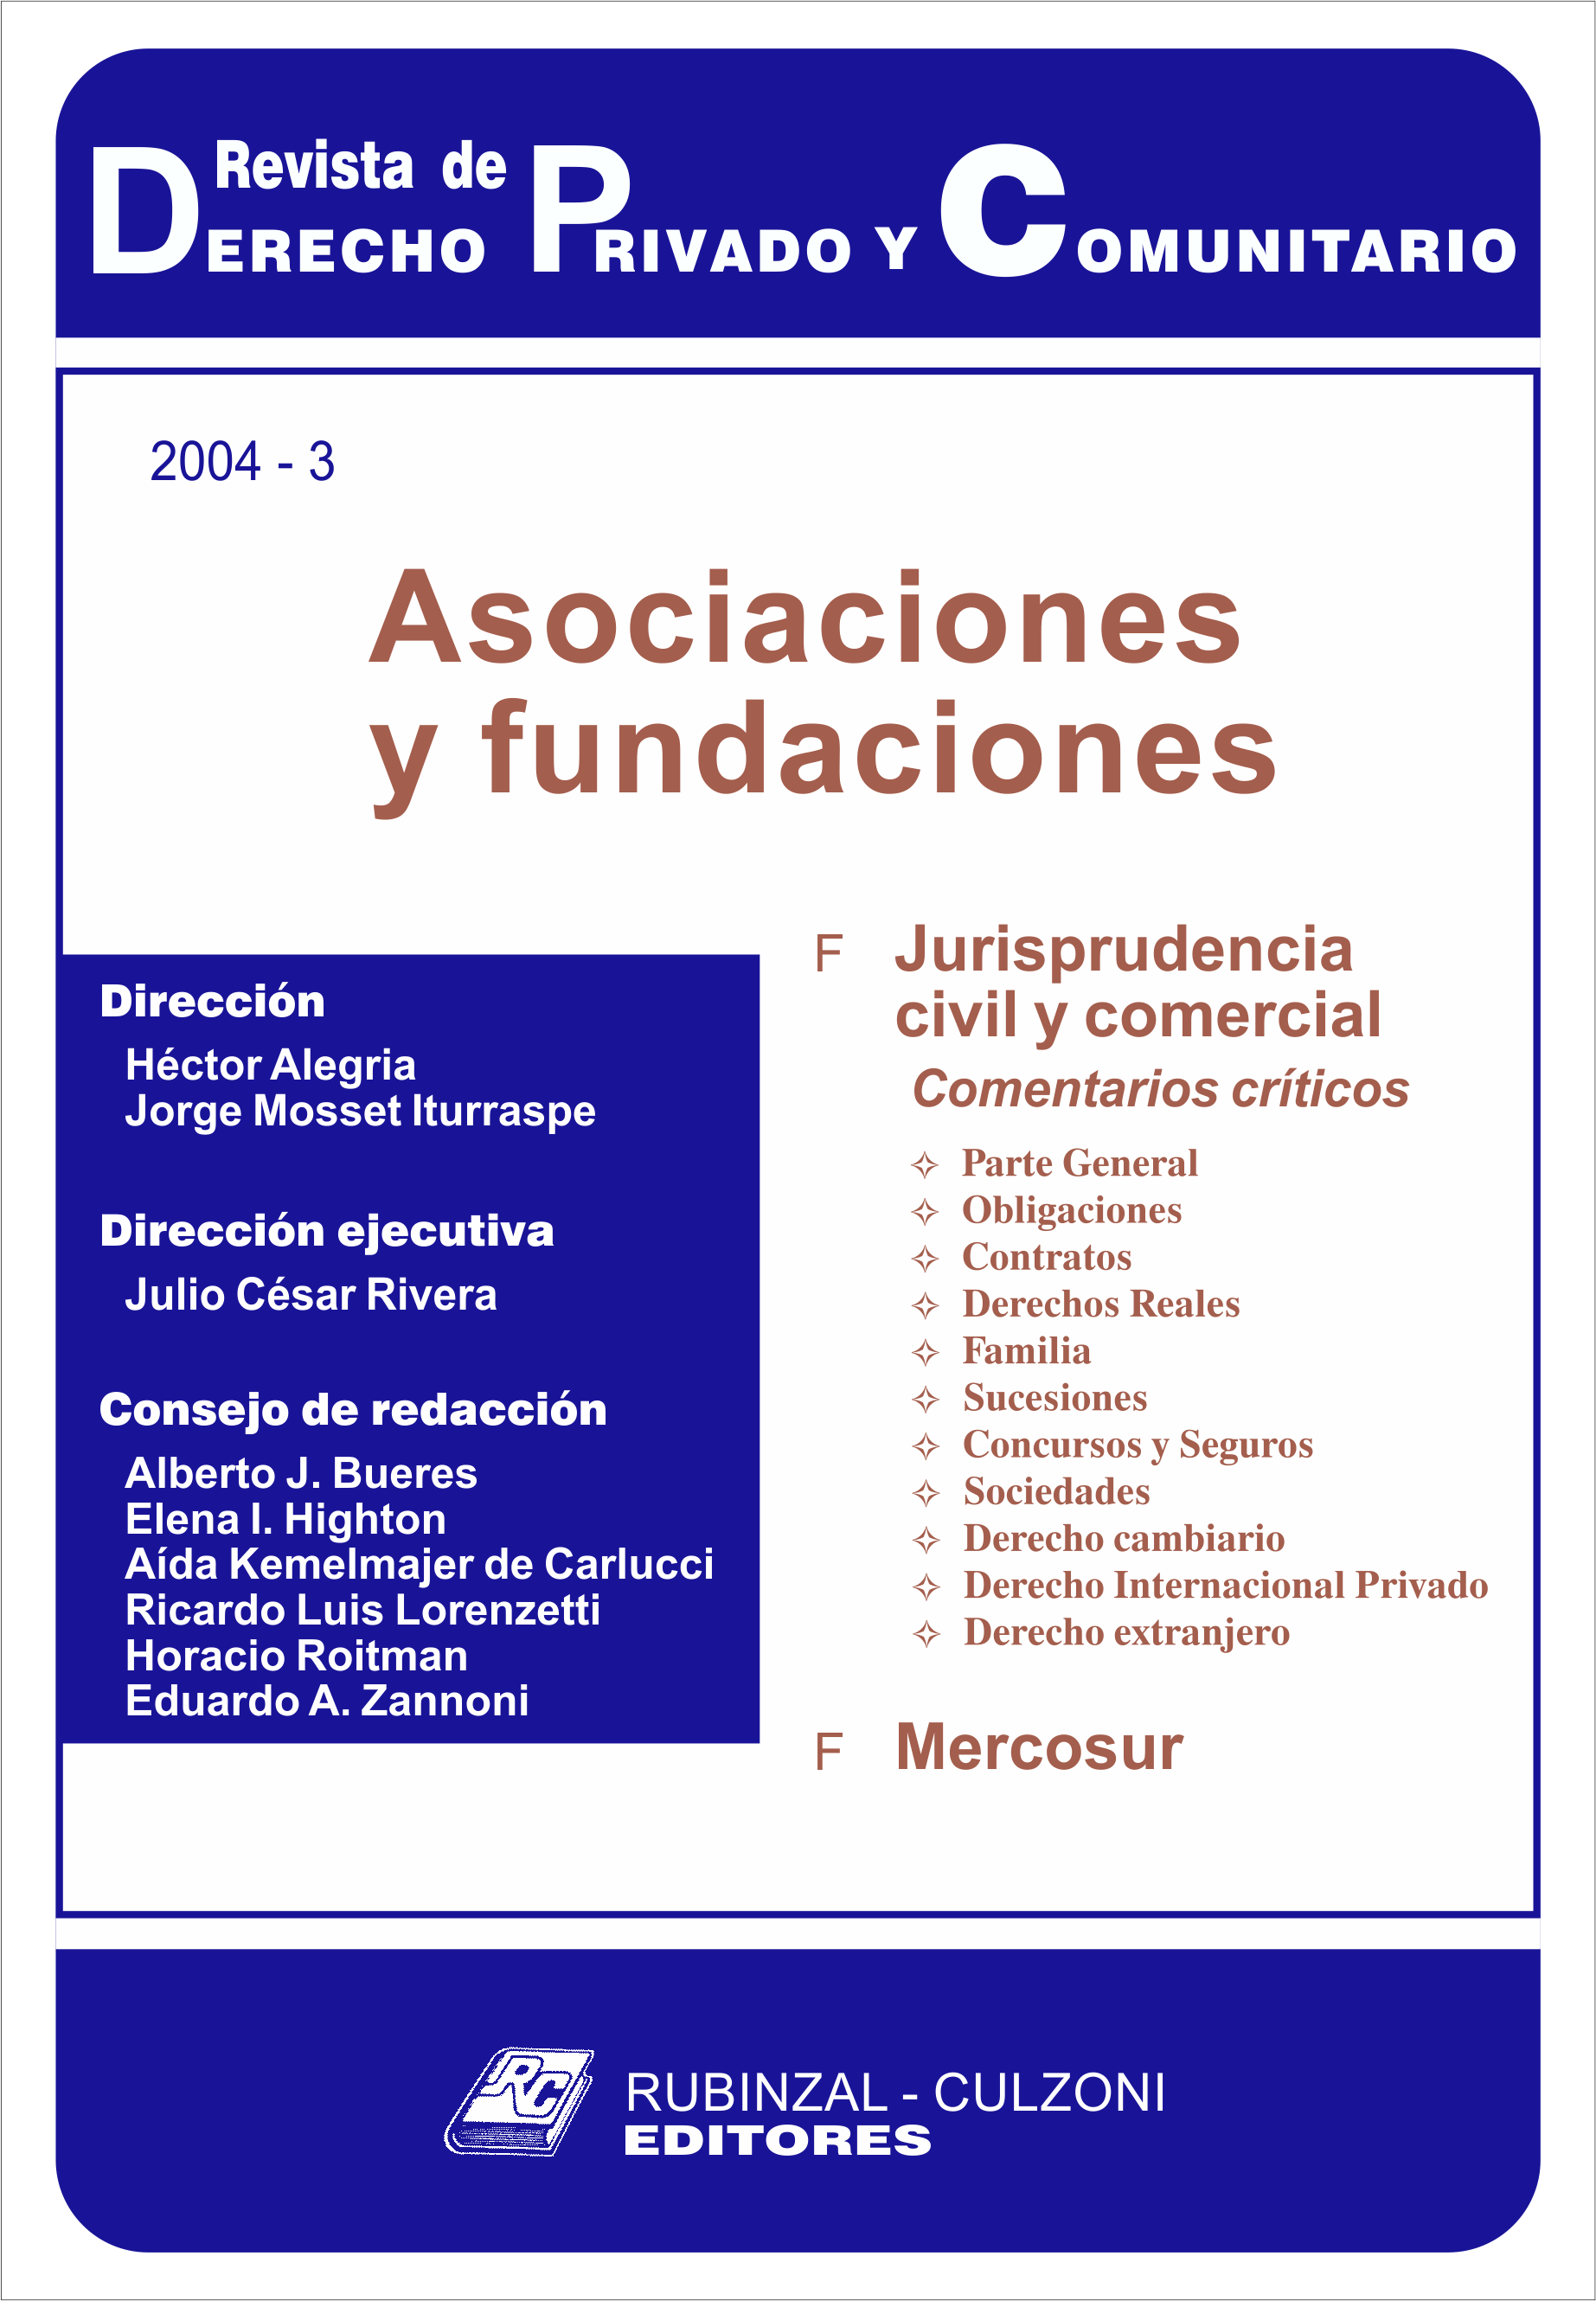 Revista de Derecho Privado y Comunitario - Asociaciones y fundaciones.